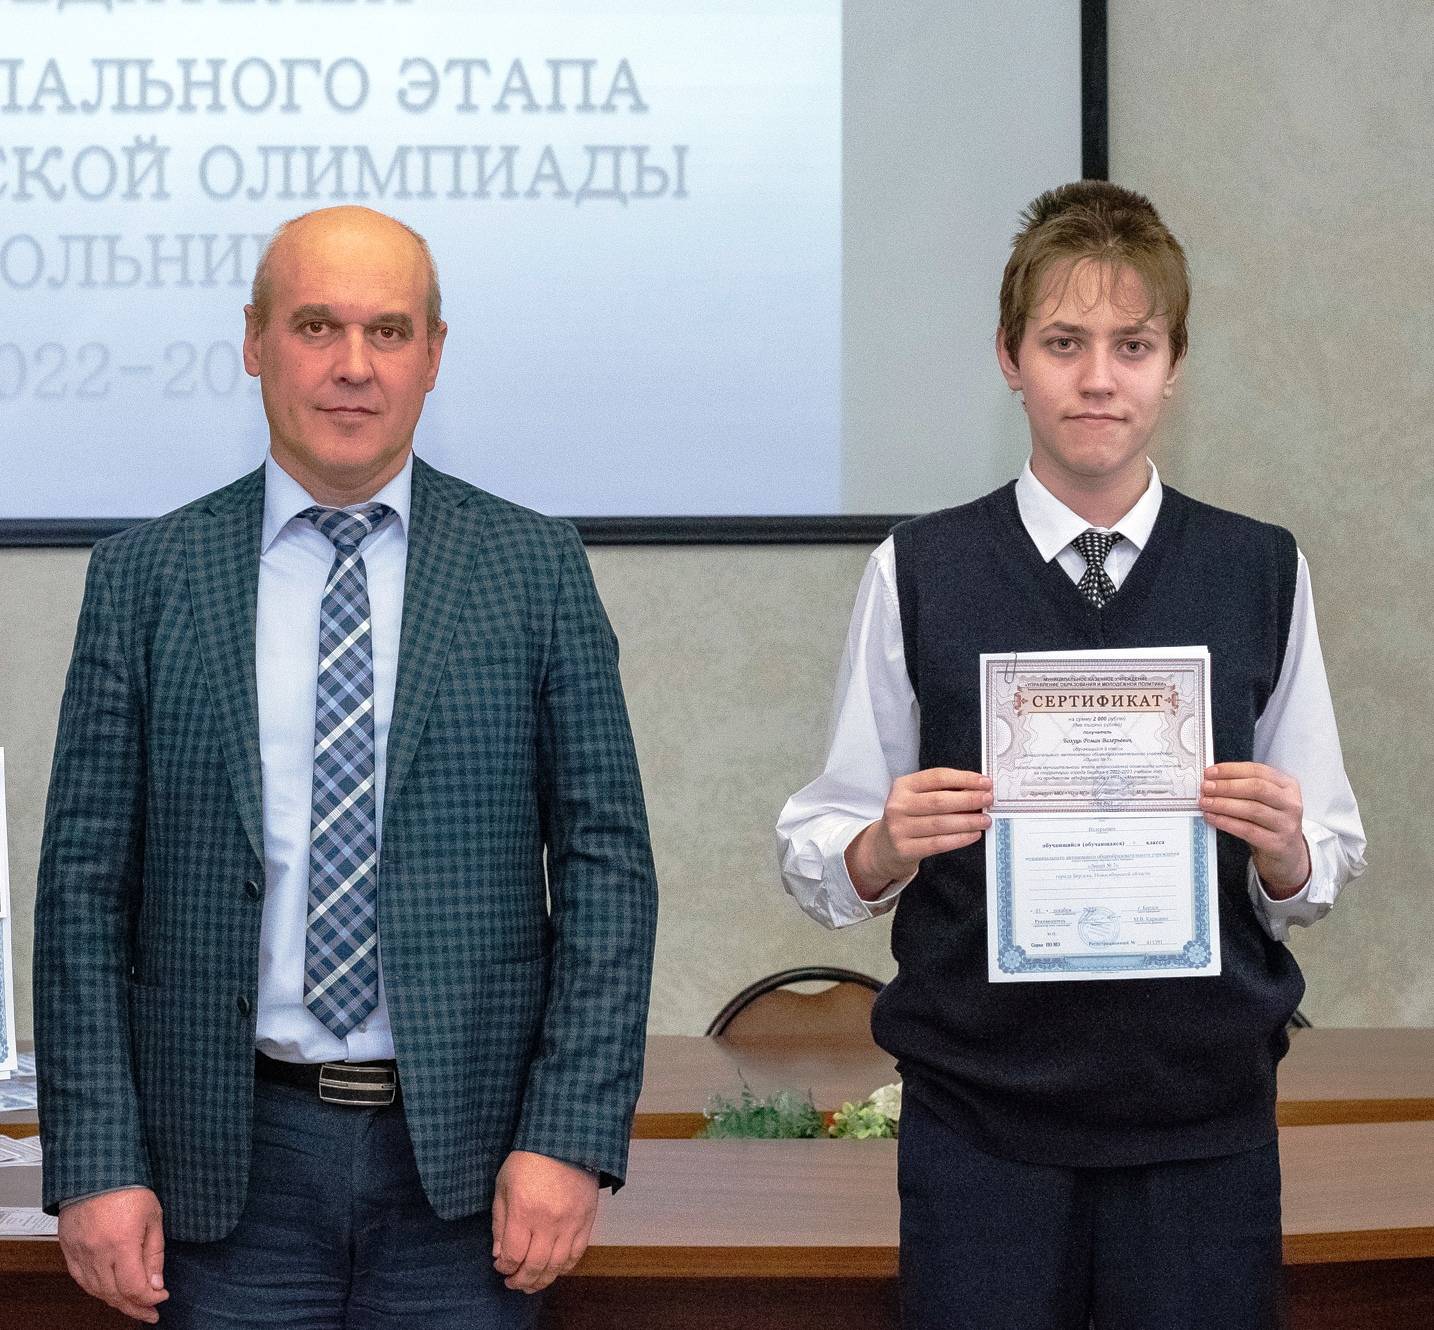 Призёром Всероссийской олимпиады школьников по математике стал девятиклассник из Бердска